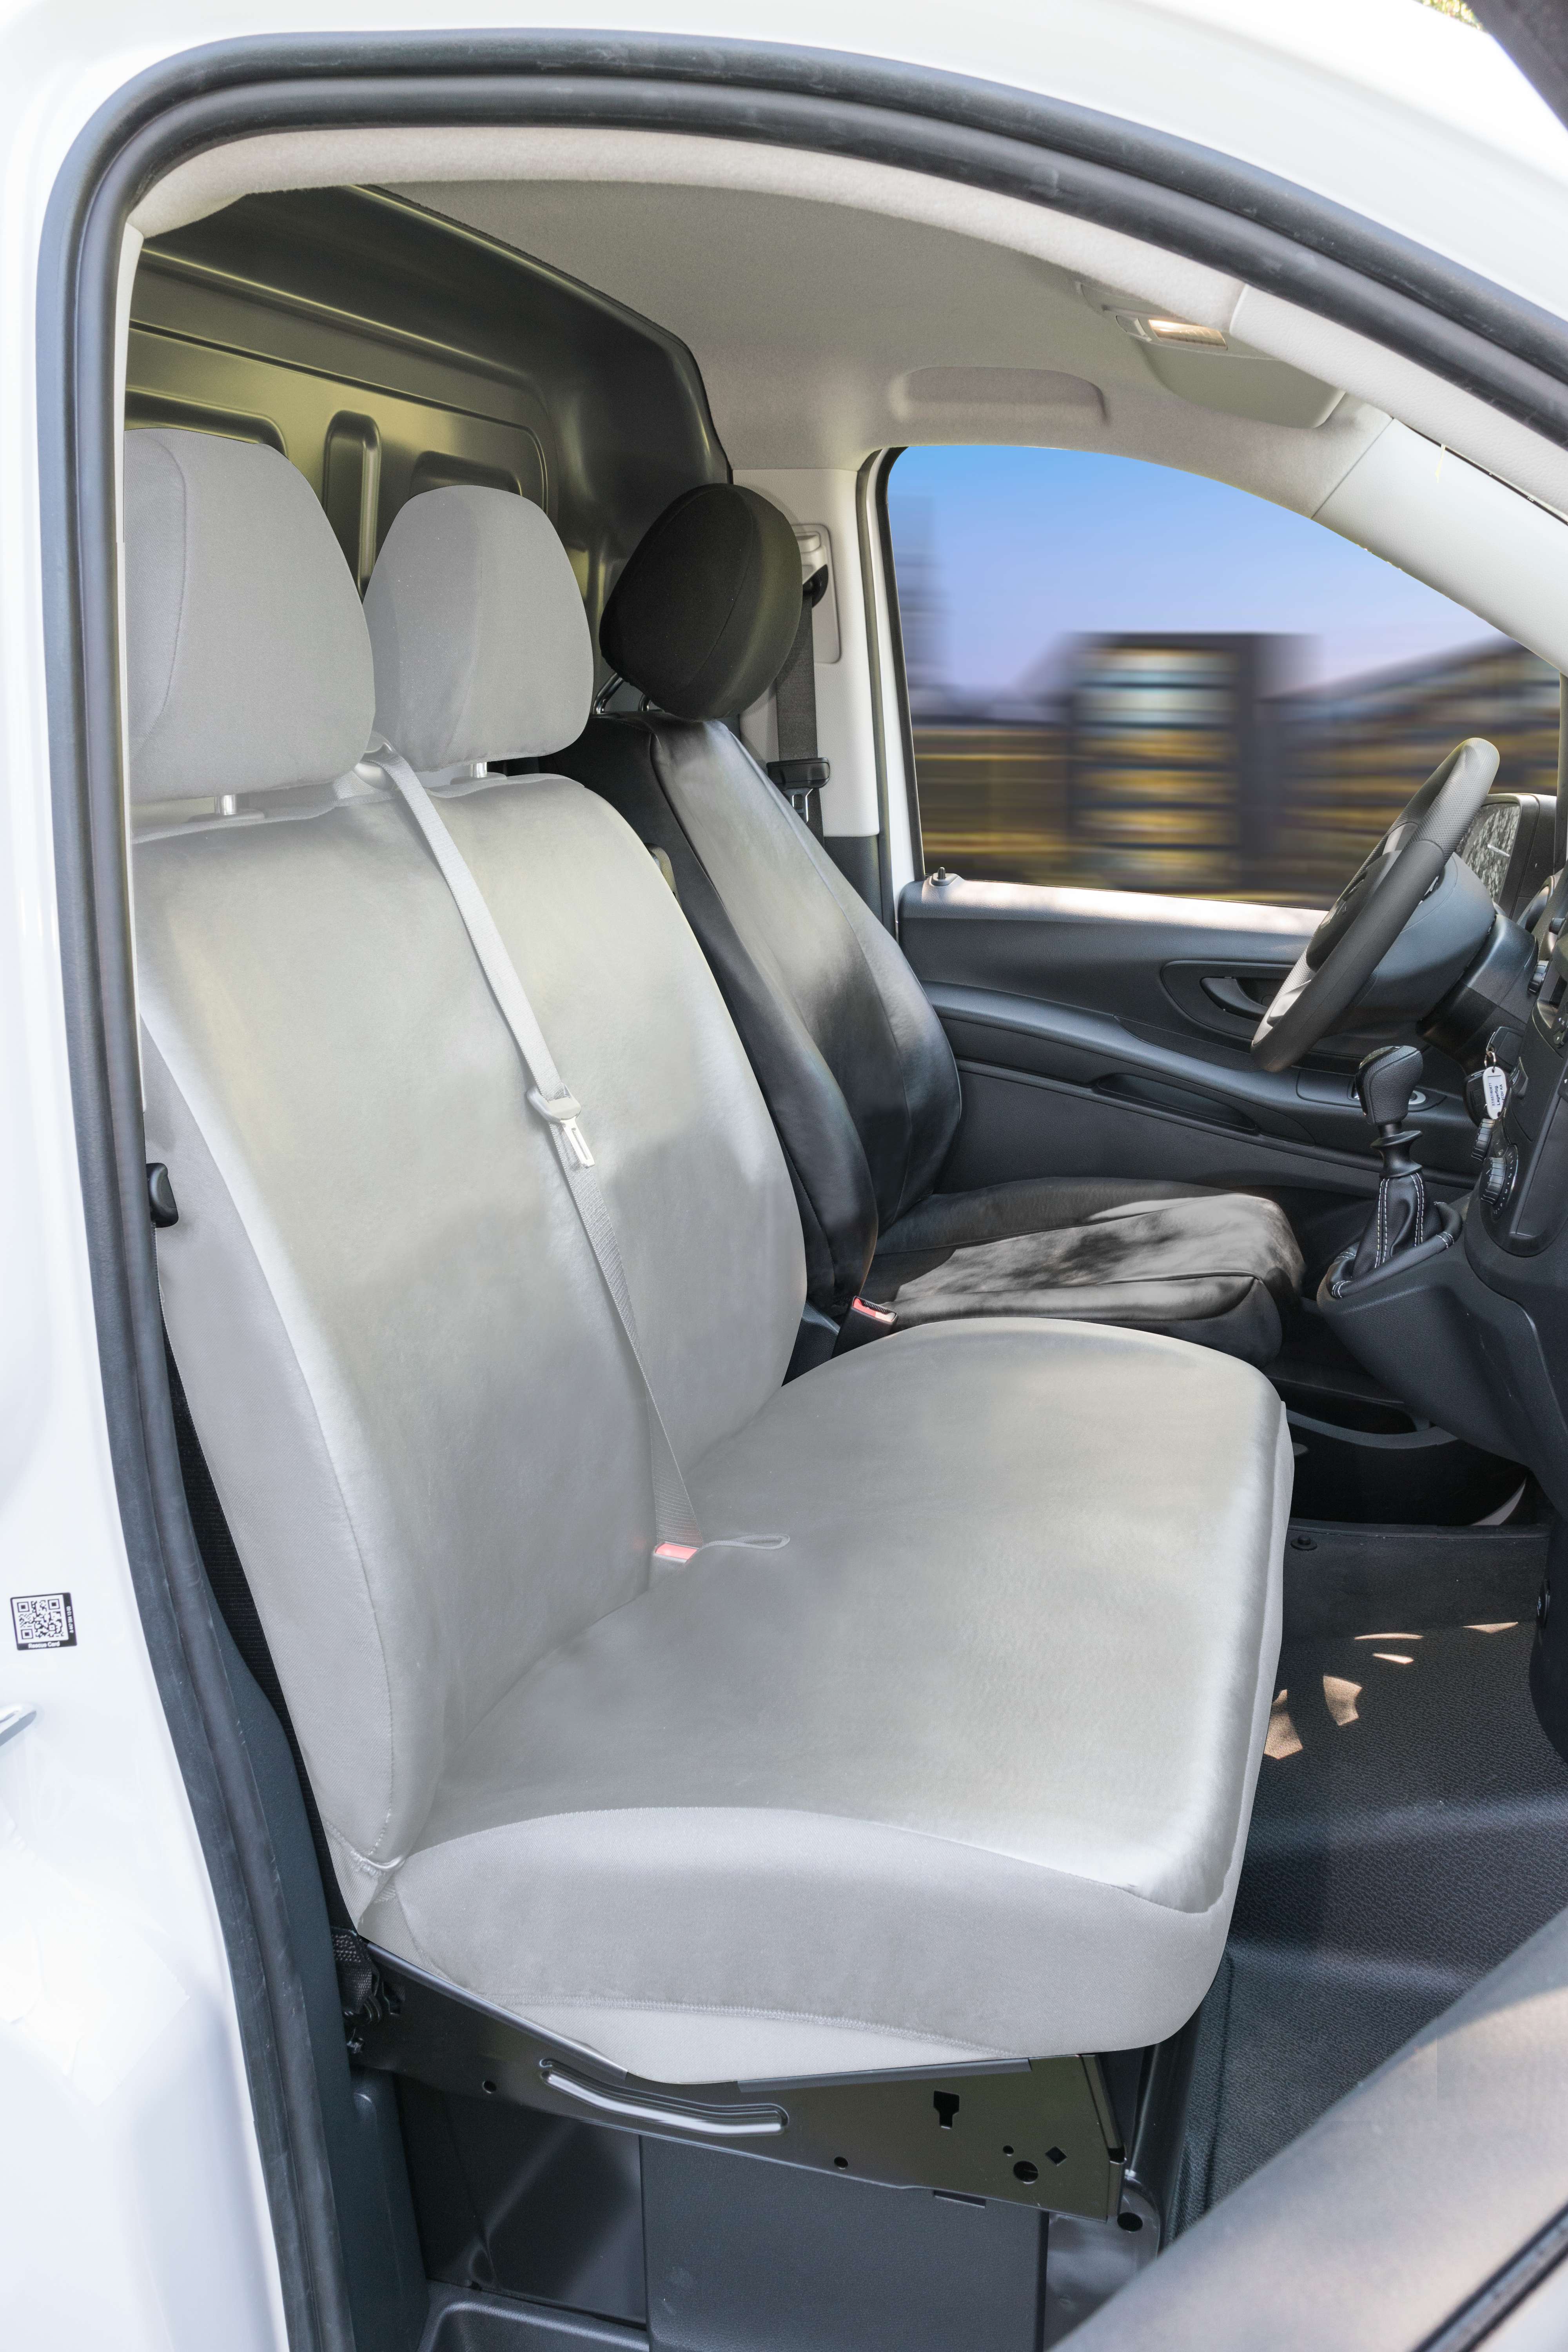 2+1 Grau Auto Kunstleder Sitzbezüg Schonbezüge für Ford Iveco Mercedes Benz